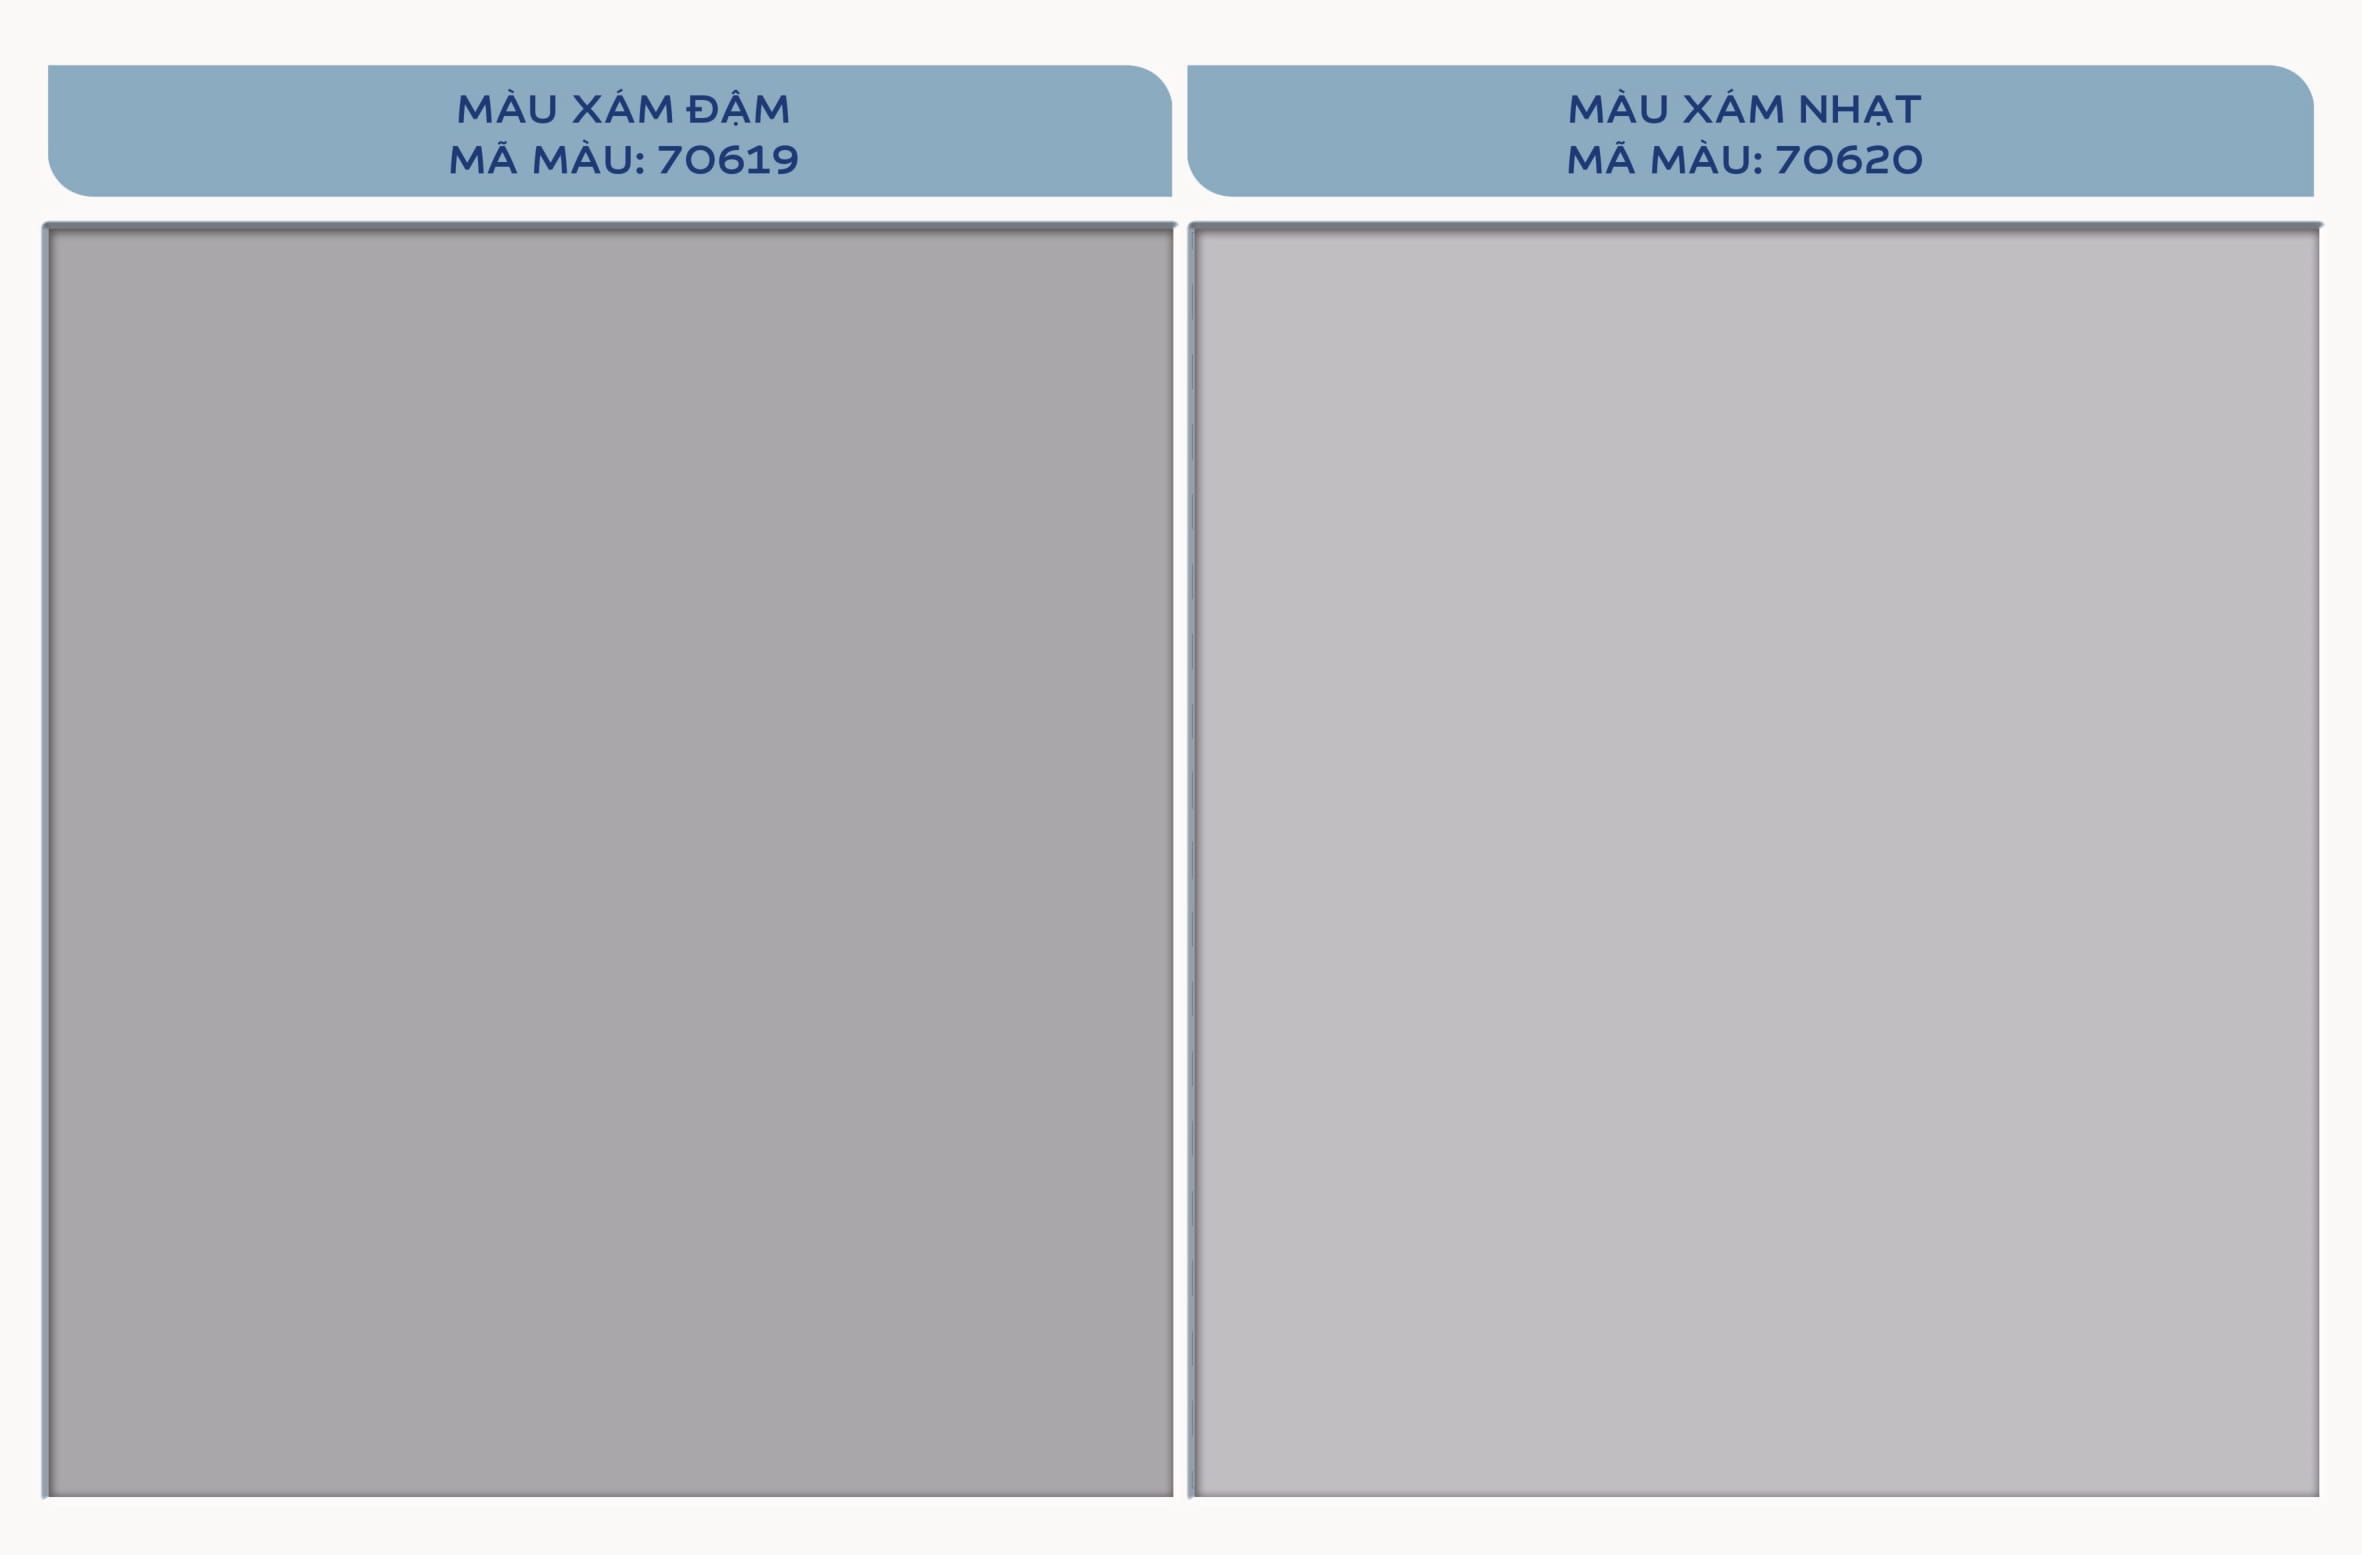 Bảng màu chống thấm Dulux Aquatech Flex mang đến cho bạn nhiều sự lựa chọn và sự tùy chỉnh cho ngôi nhà của bạn. Với khả năng chống thấm và độ bền cao, màu sắc lấp lánh của Dulux Aquatech Flex sẽ giúp cho không gian sống của bạn trở nên đẹp mắt và chắc chắn hơn bao giờ hết.